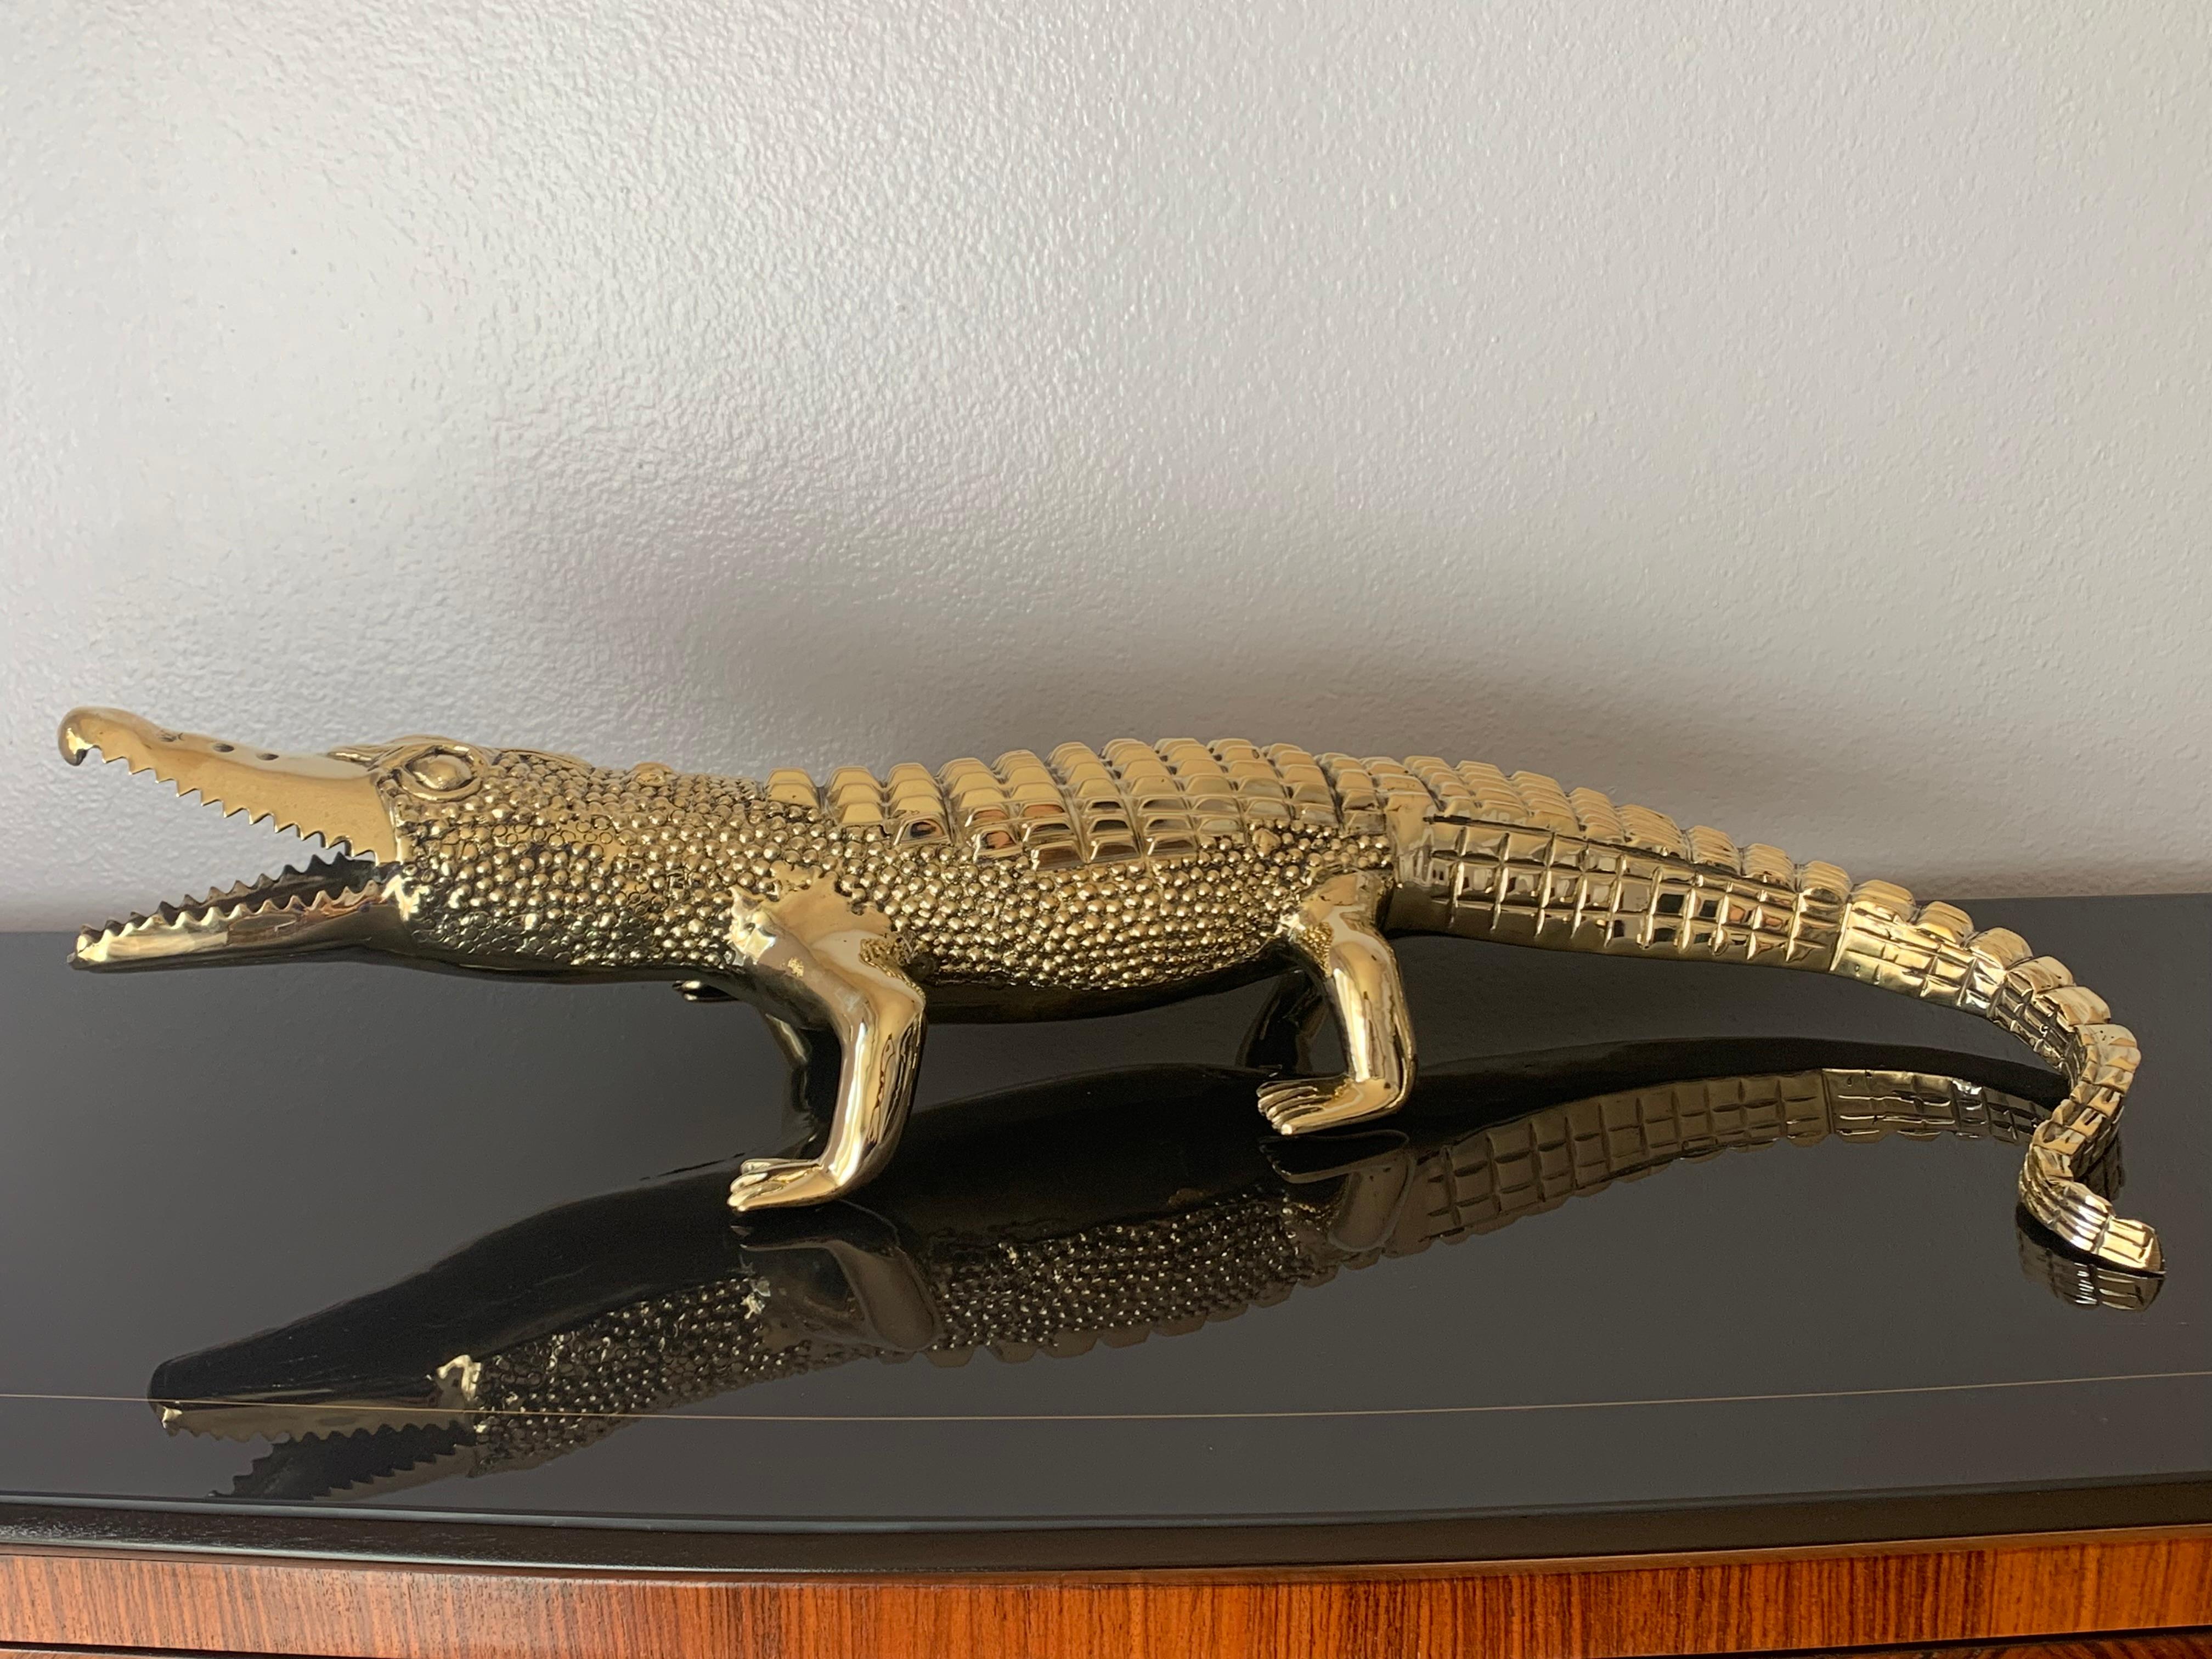 Brass crocodile or alligator sculpture pet.